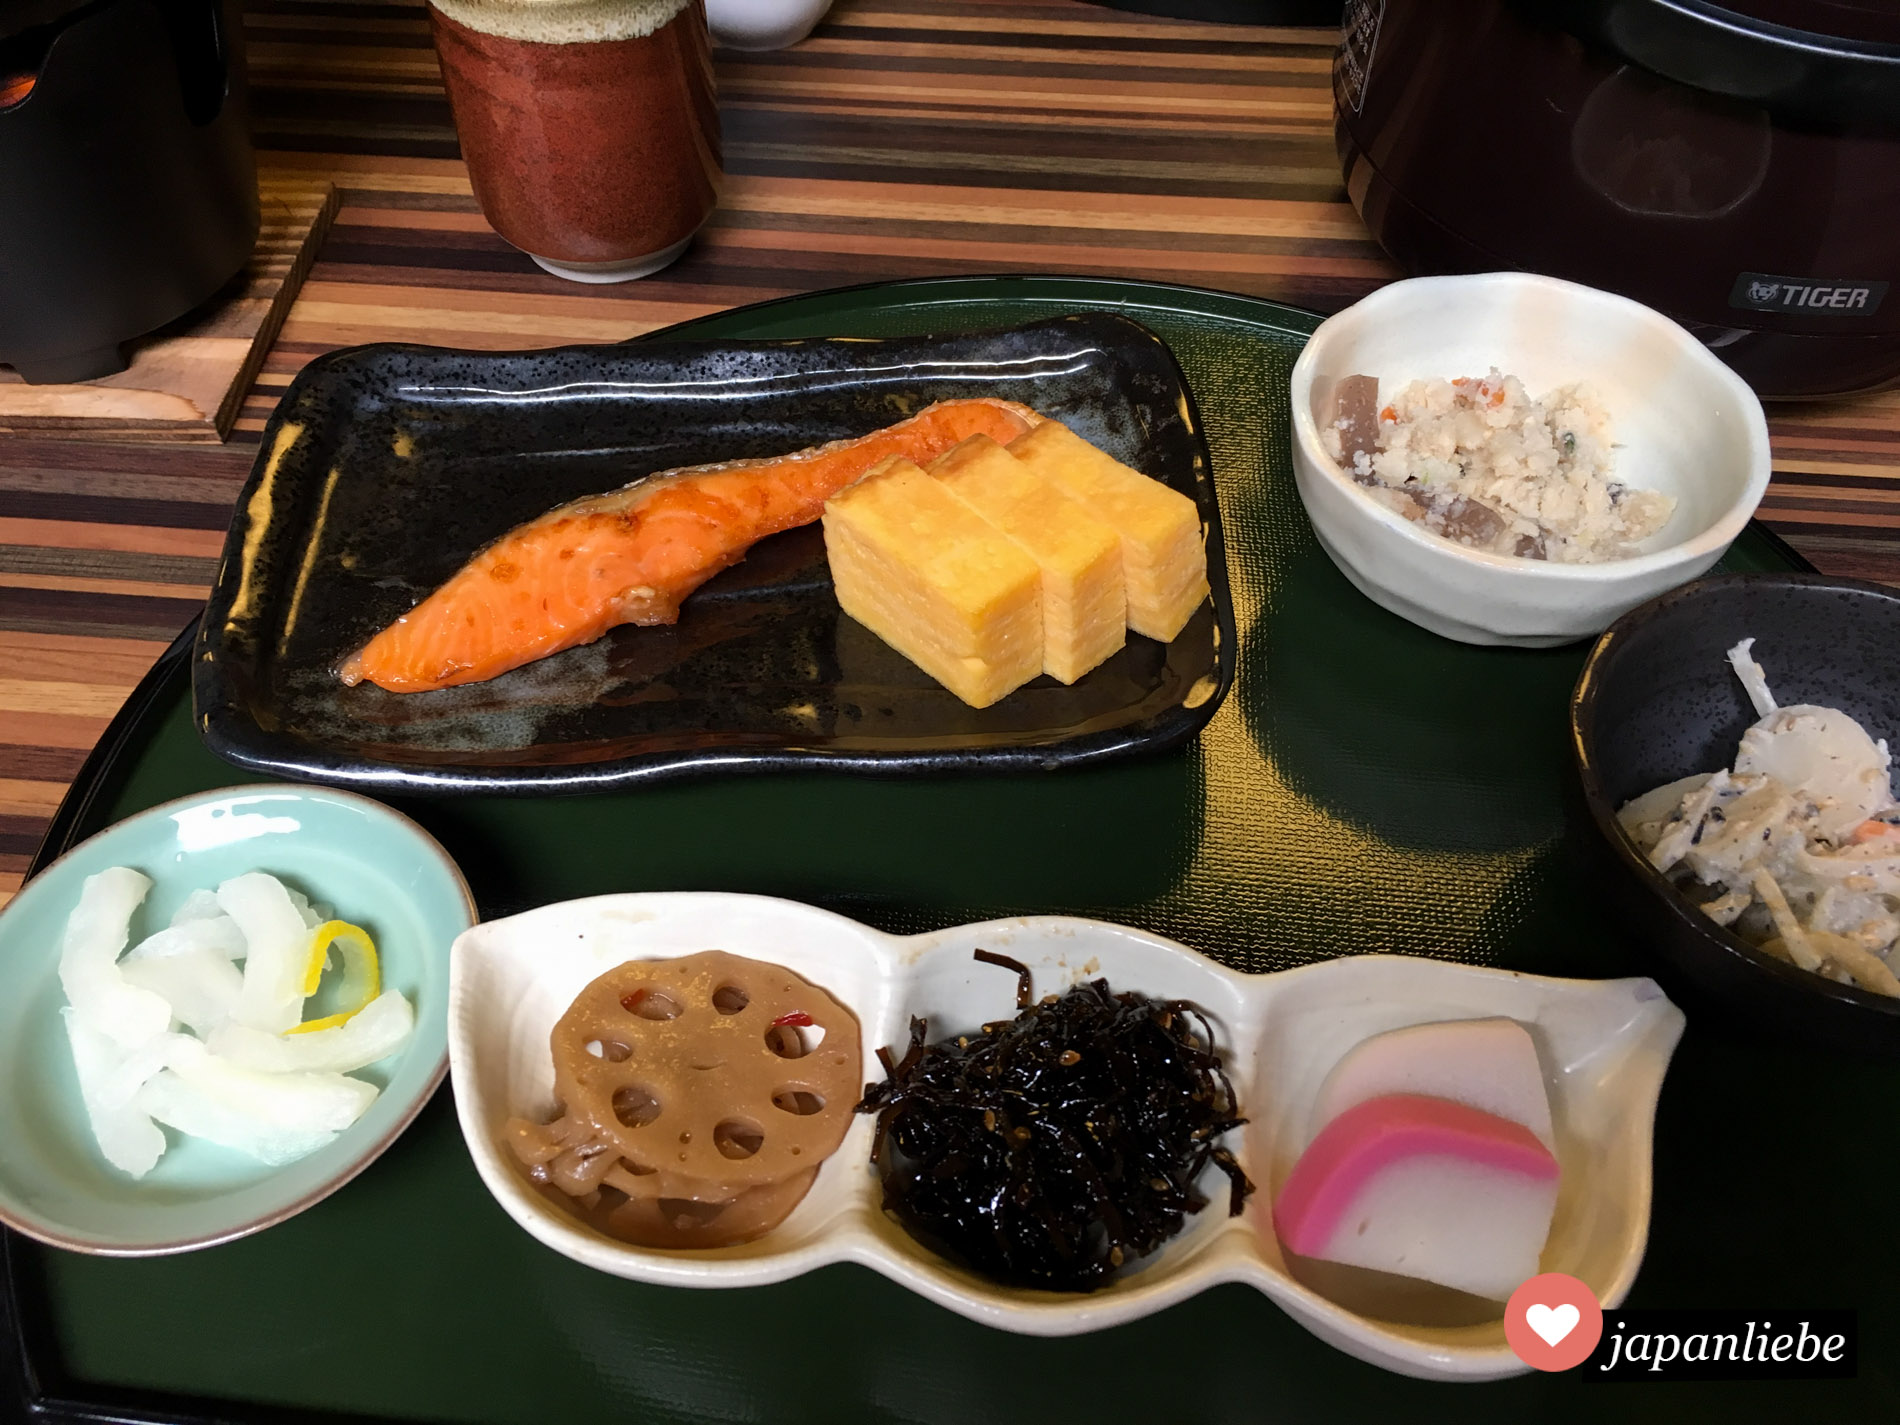 Bei diesem japanischen Frühstück sind viele traditionelle Zutaten vorhanden: Fisch, Ei, Lotuswurzel, hijiki-Algen, Rettich und japanische Salate.